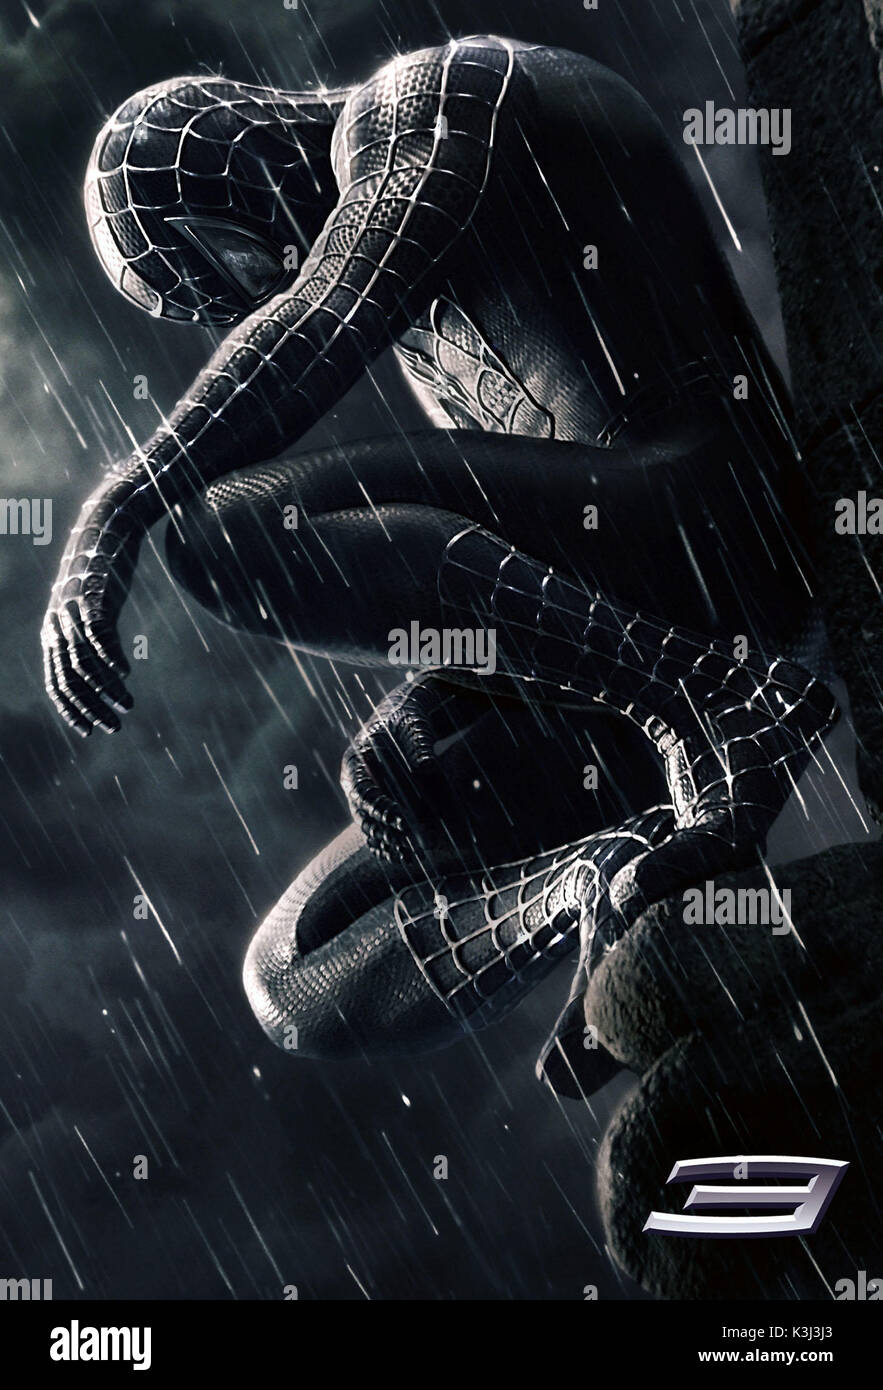 Spider-Man 3 Nutzung der Bild muss mit der folgenden Bildunterschrift begleitet werden. Die Bildunterschrift bestätigt, dass Spider-Man trägt einen schwarzen Anzug, so wird davon ausgegangen, dass es sich NICHT um eine schwarz-weiß Foto: Sie können denken Sie an ein schwarz-weiß Foto suchen. Genau hinsehen, Spider-Man trägt einen schwarzen Anzug in Spider-Man 3. Tobey Maguire kehrt in die Rolle von Peter Parker/Spider-Man 3 Spider-Man im kommenden Mai 2007. SPIDER-MAN 3 [USA 2007] Tobey Maguire als Peter Parker/Spider-Man Datum: 2007 Stockfoto